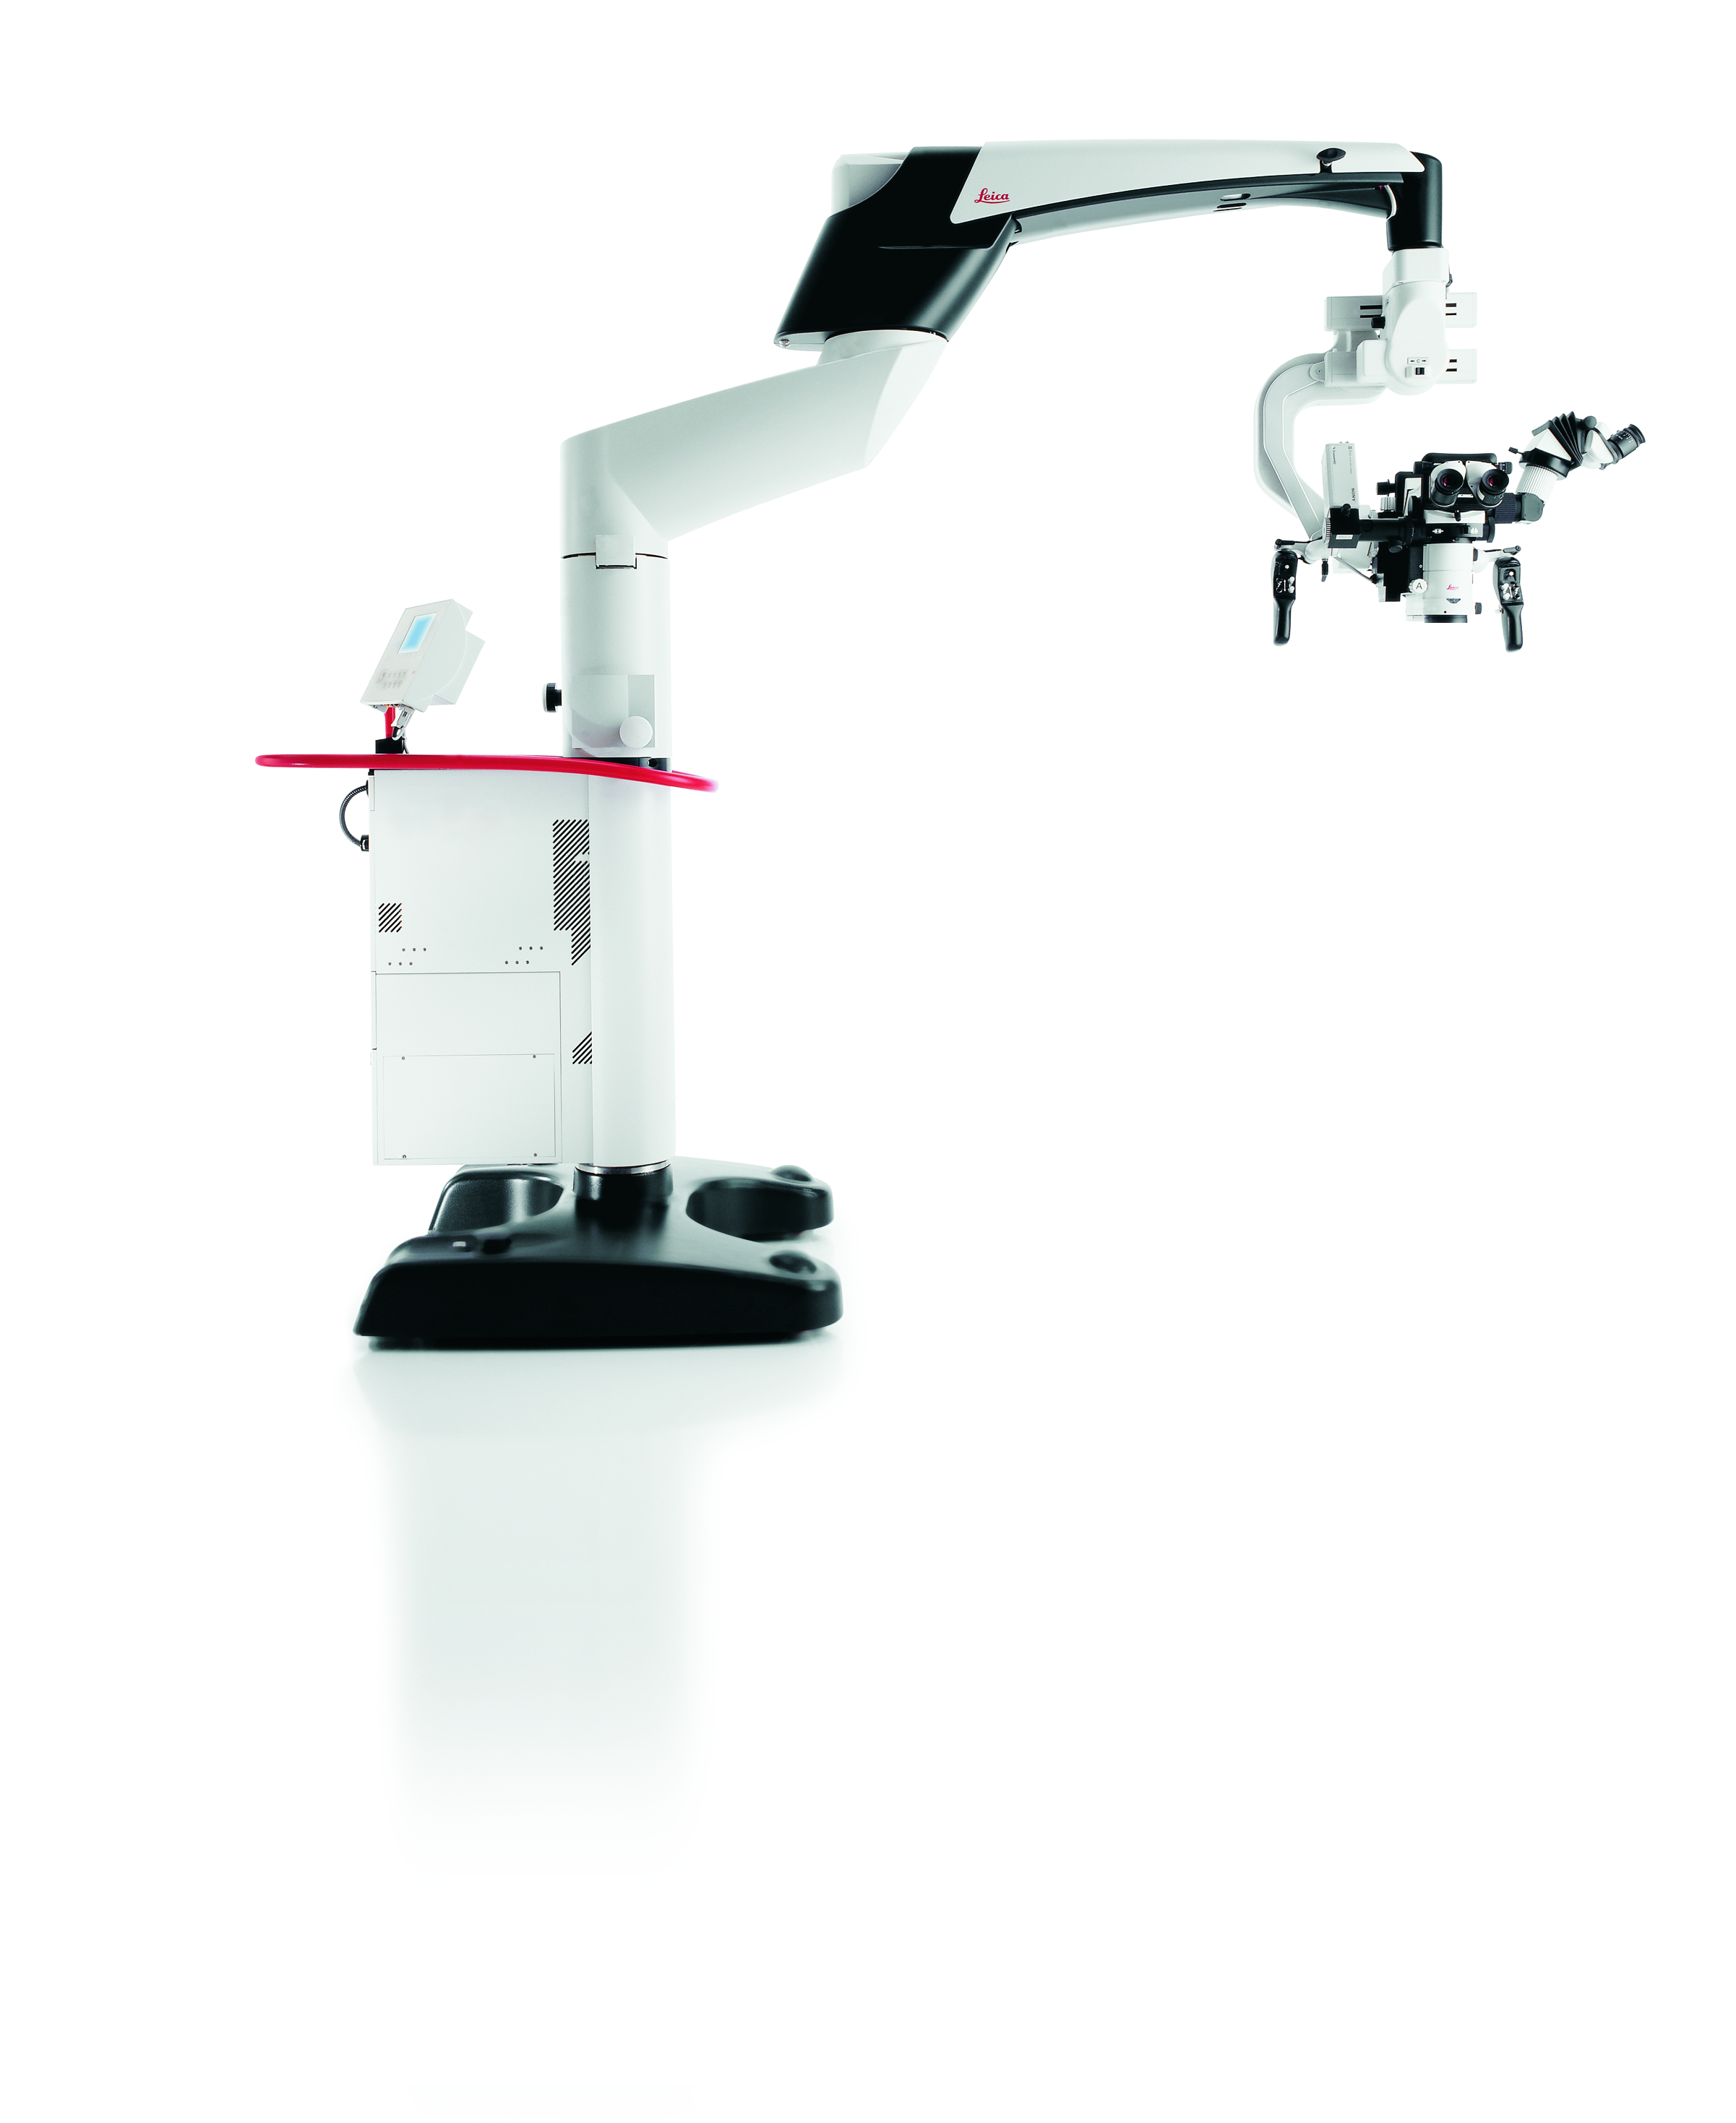 Soluzione di microscopio chirurgico Leica M25 MS3 per neurochirurgia, chirurgia spinale e ORL.